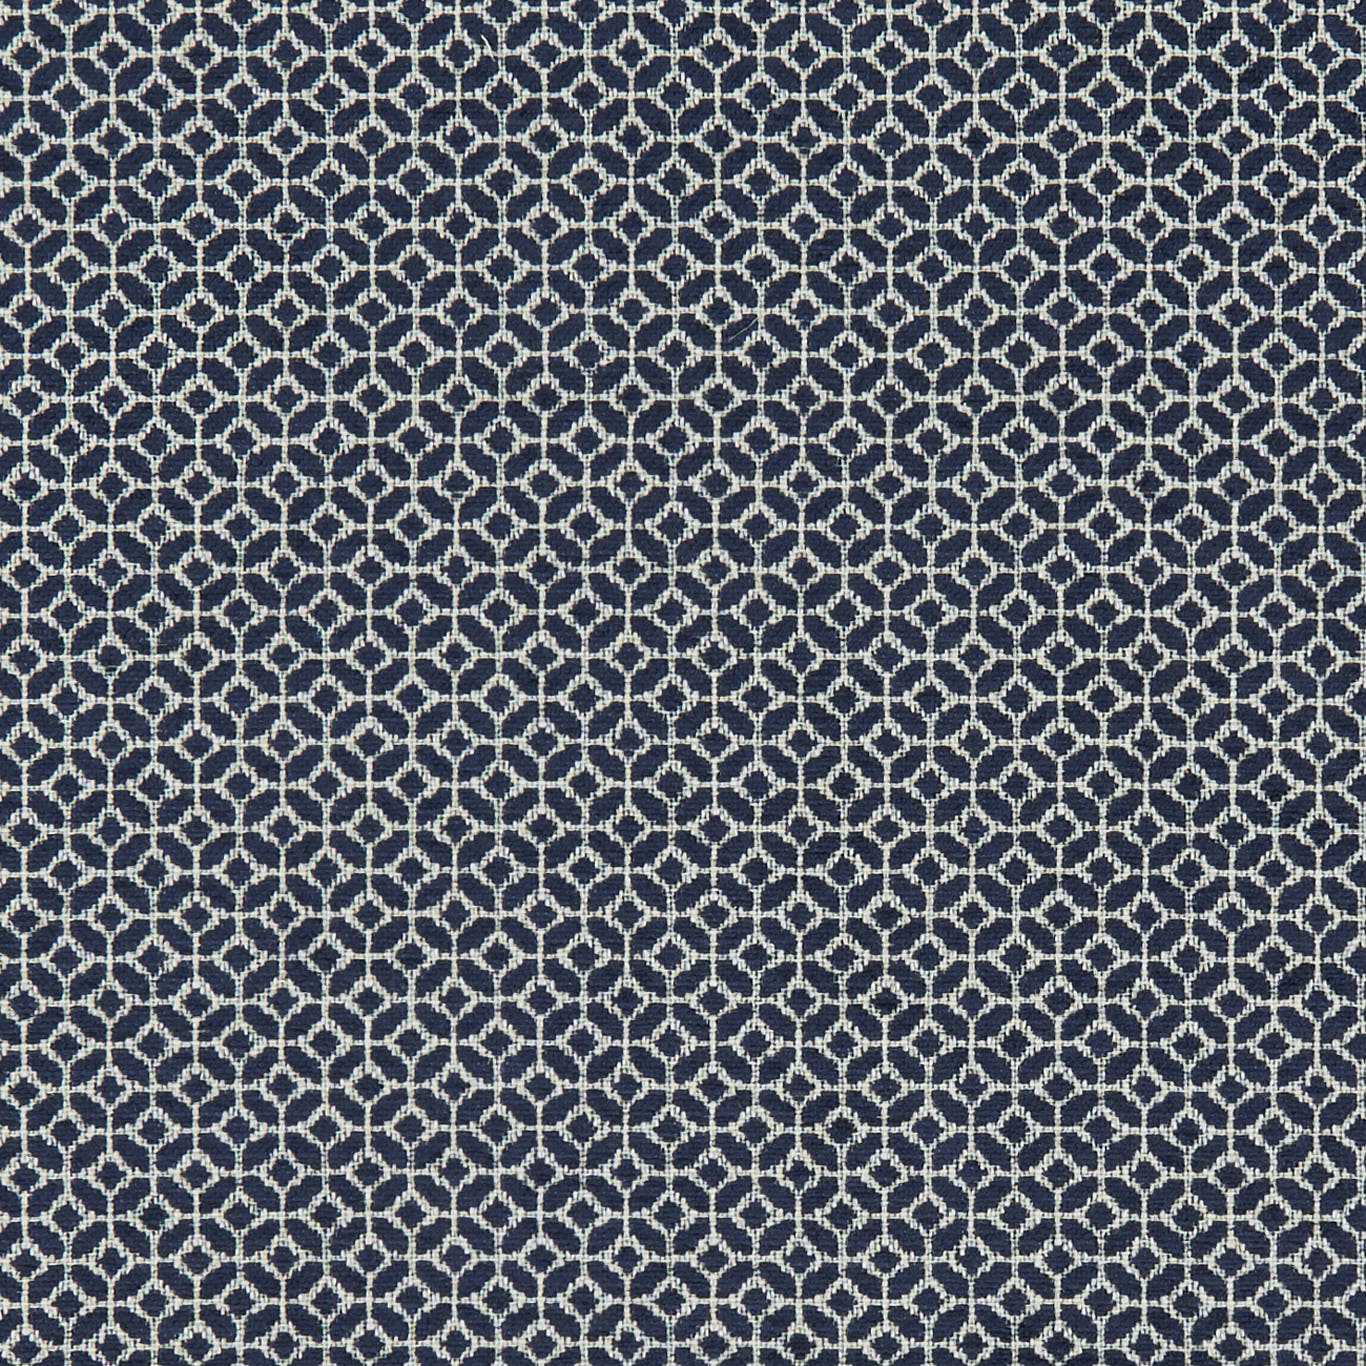 Orbit Midnight Fabric by CNC